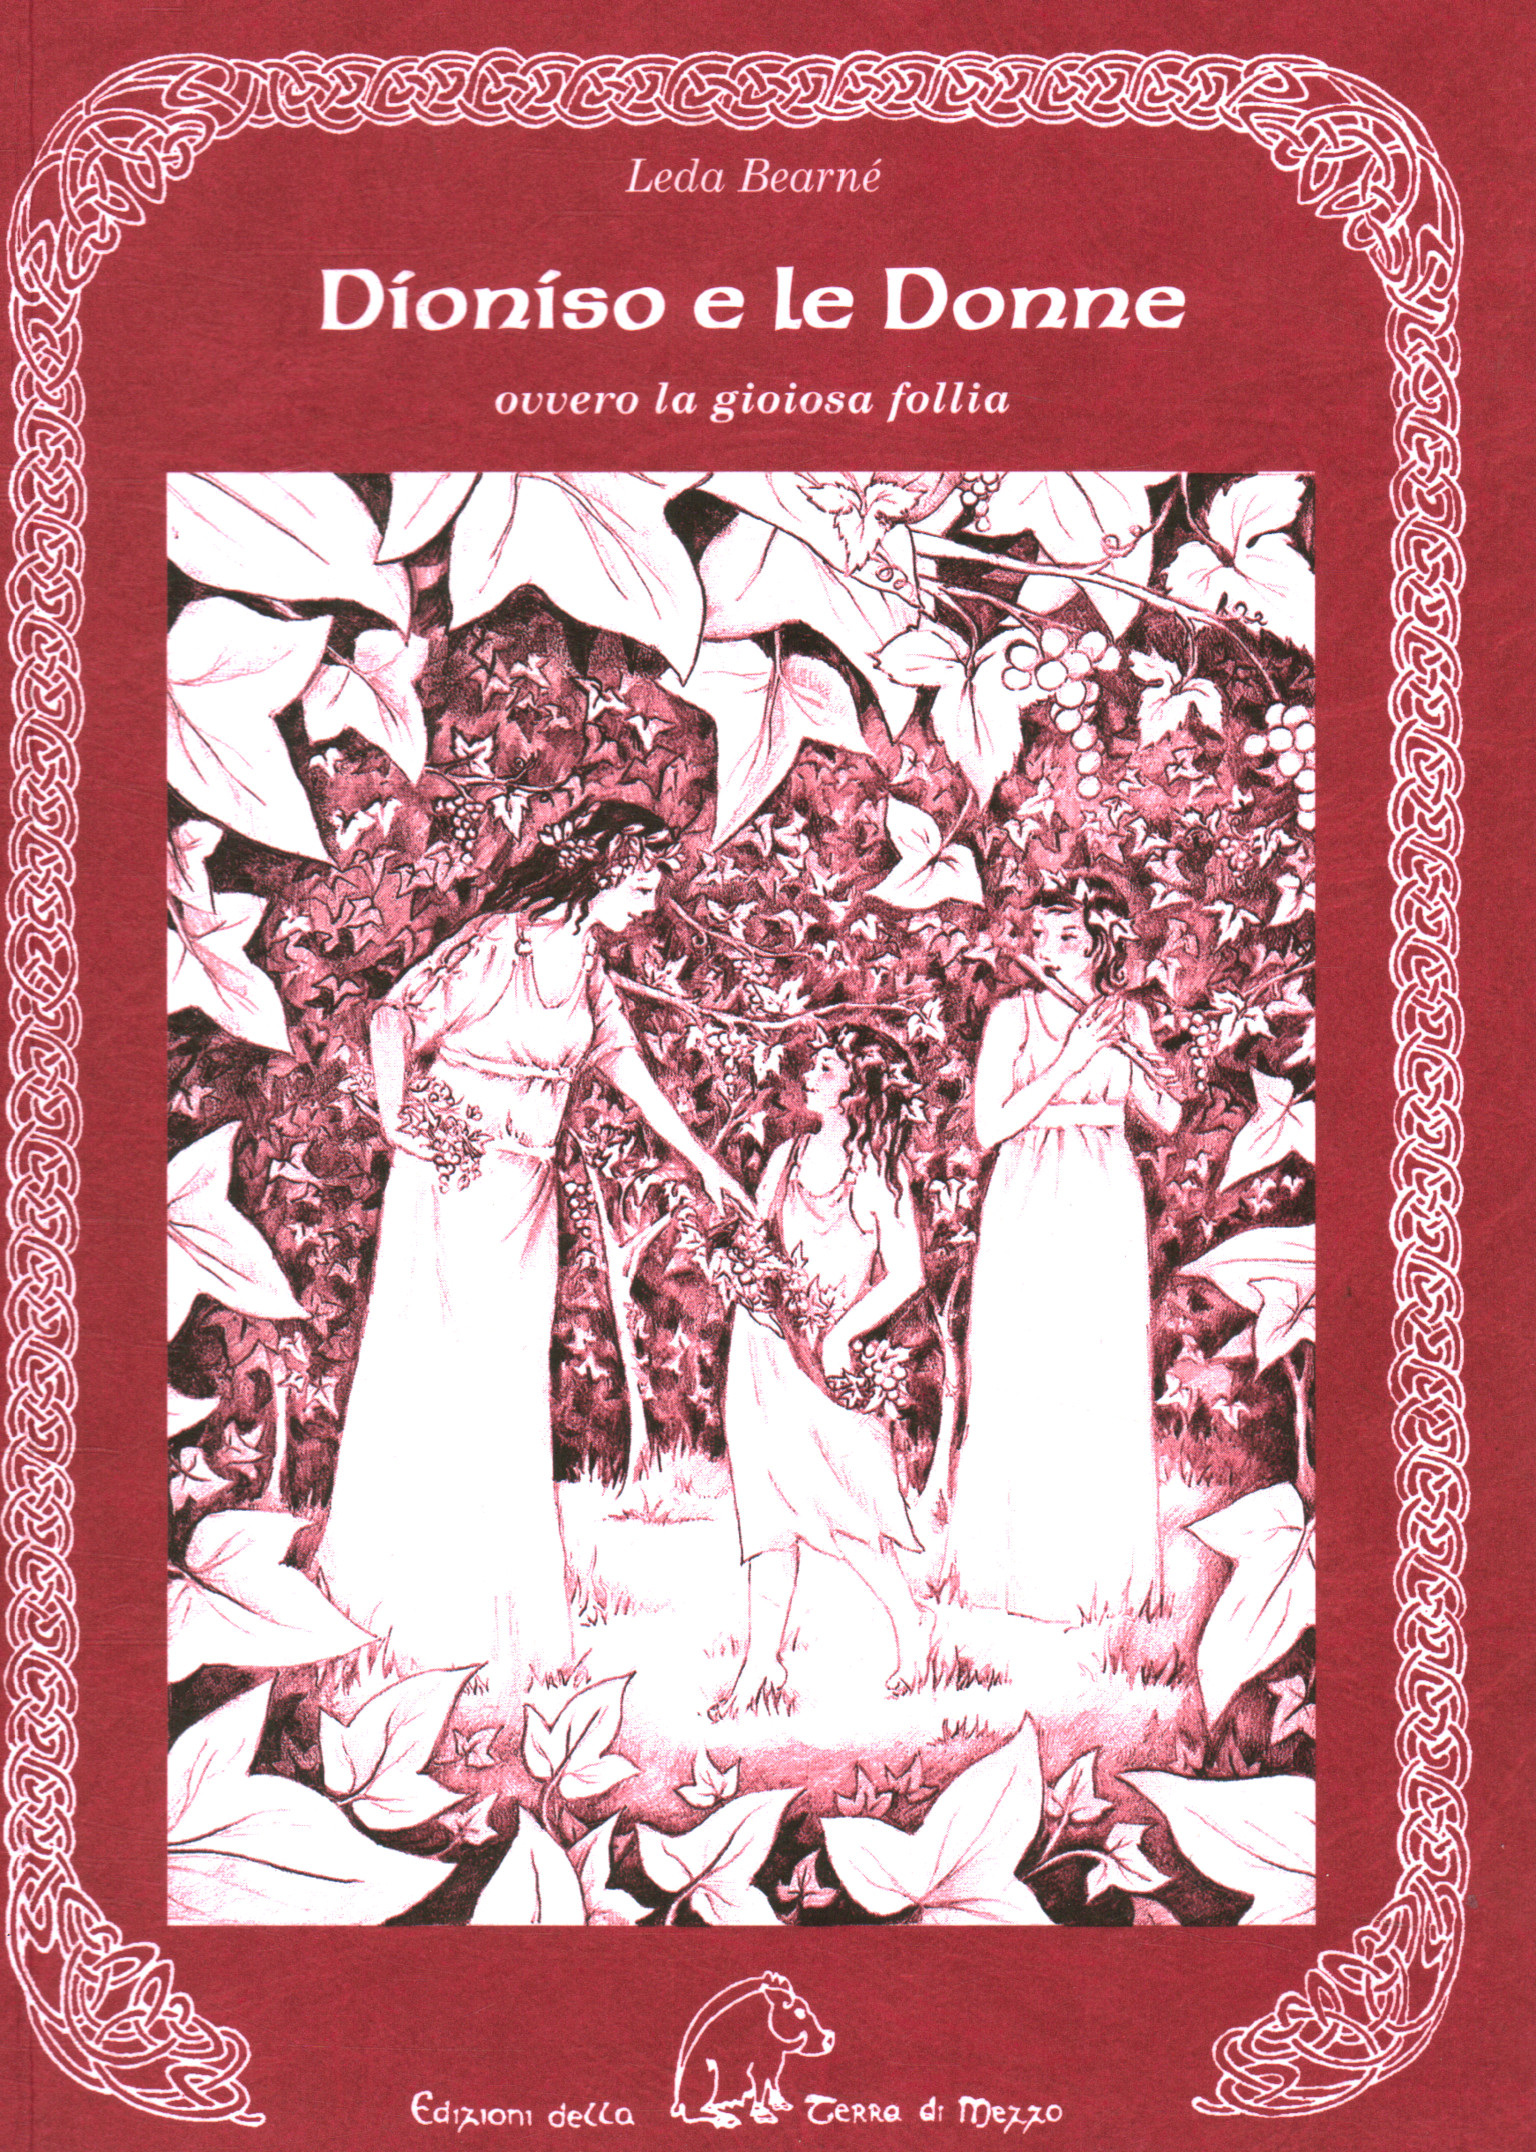 Dioniso e le Donne ovvero La gioiosa%2,Dioniso e le Donne ovvero La gioiosa%2